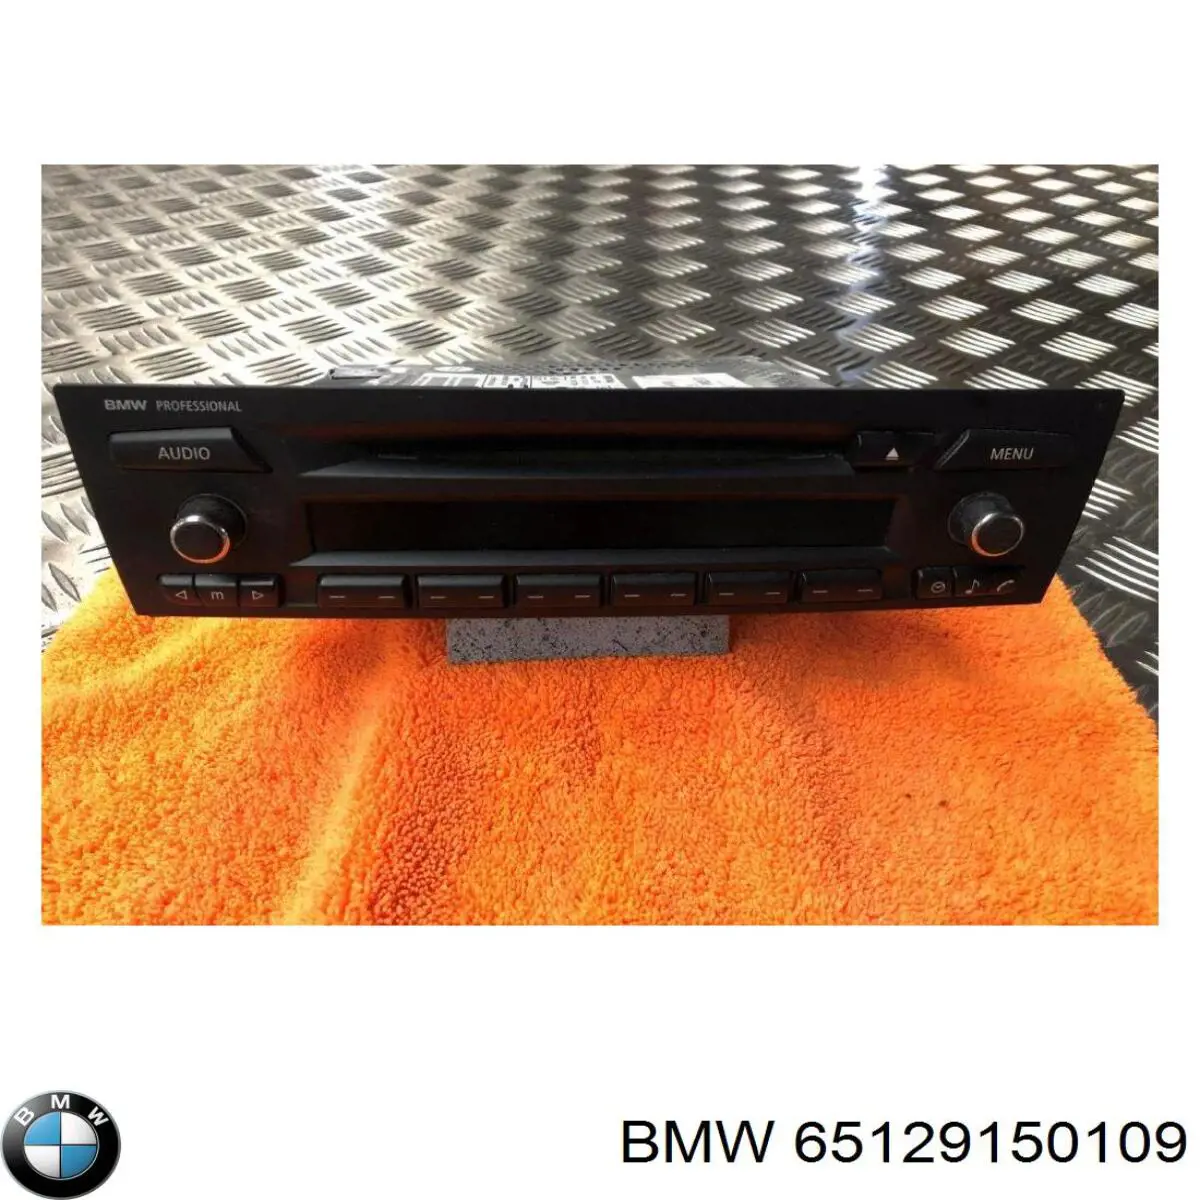 65129132216 BMW radio (radio am/fm)